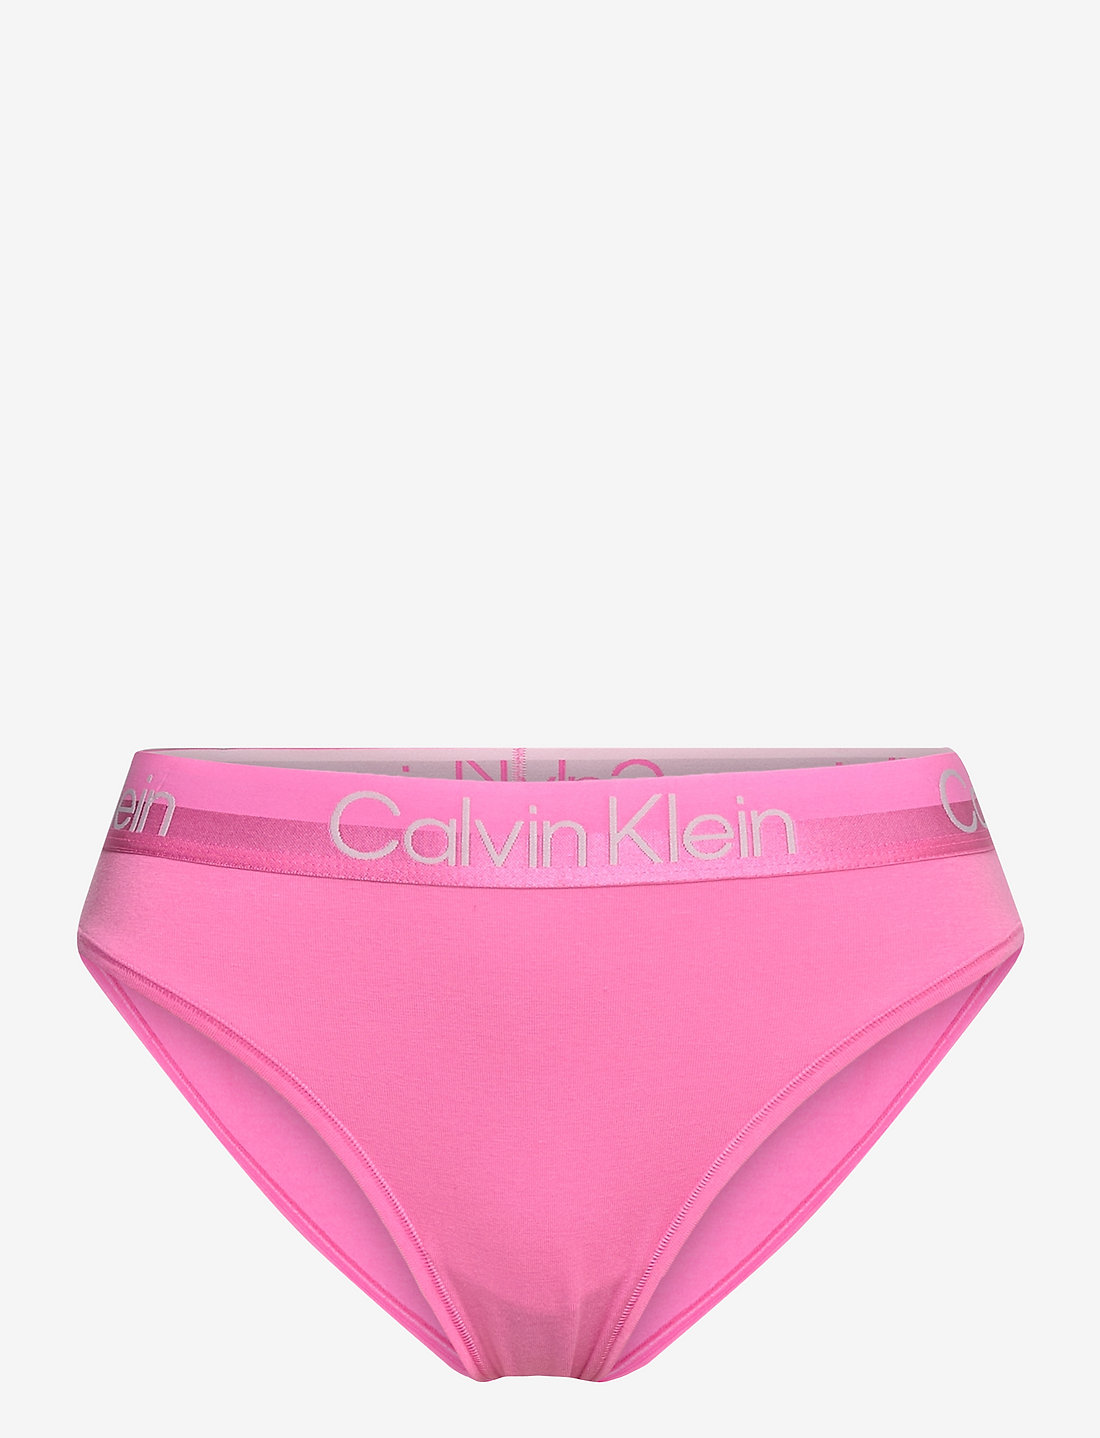 Calvin Klein Cheeky Bikini - Briefs 